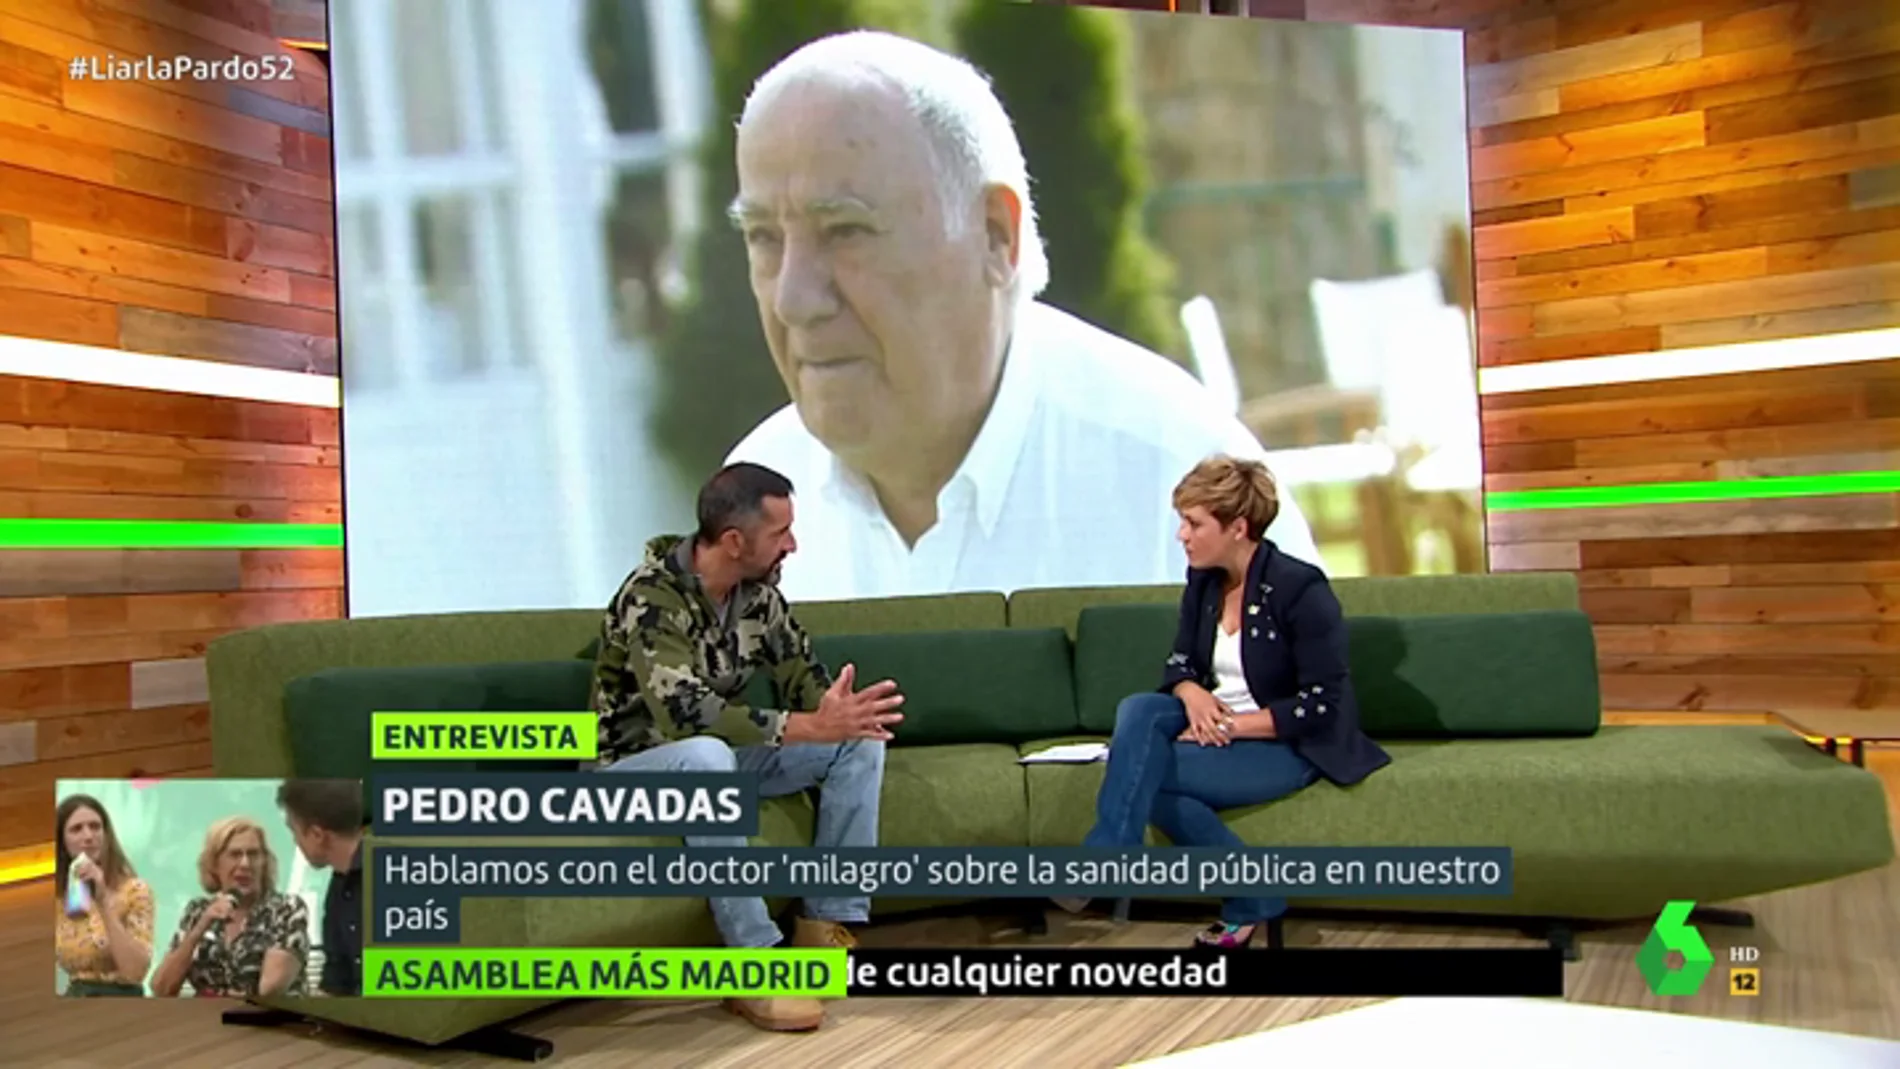 Pedro Cavadas defiende las donaciones de Amancio Ortega: "Podría quemar su dinero y lo dona a la Sanidad"